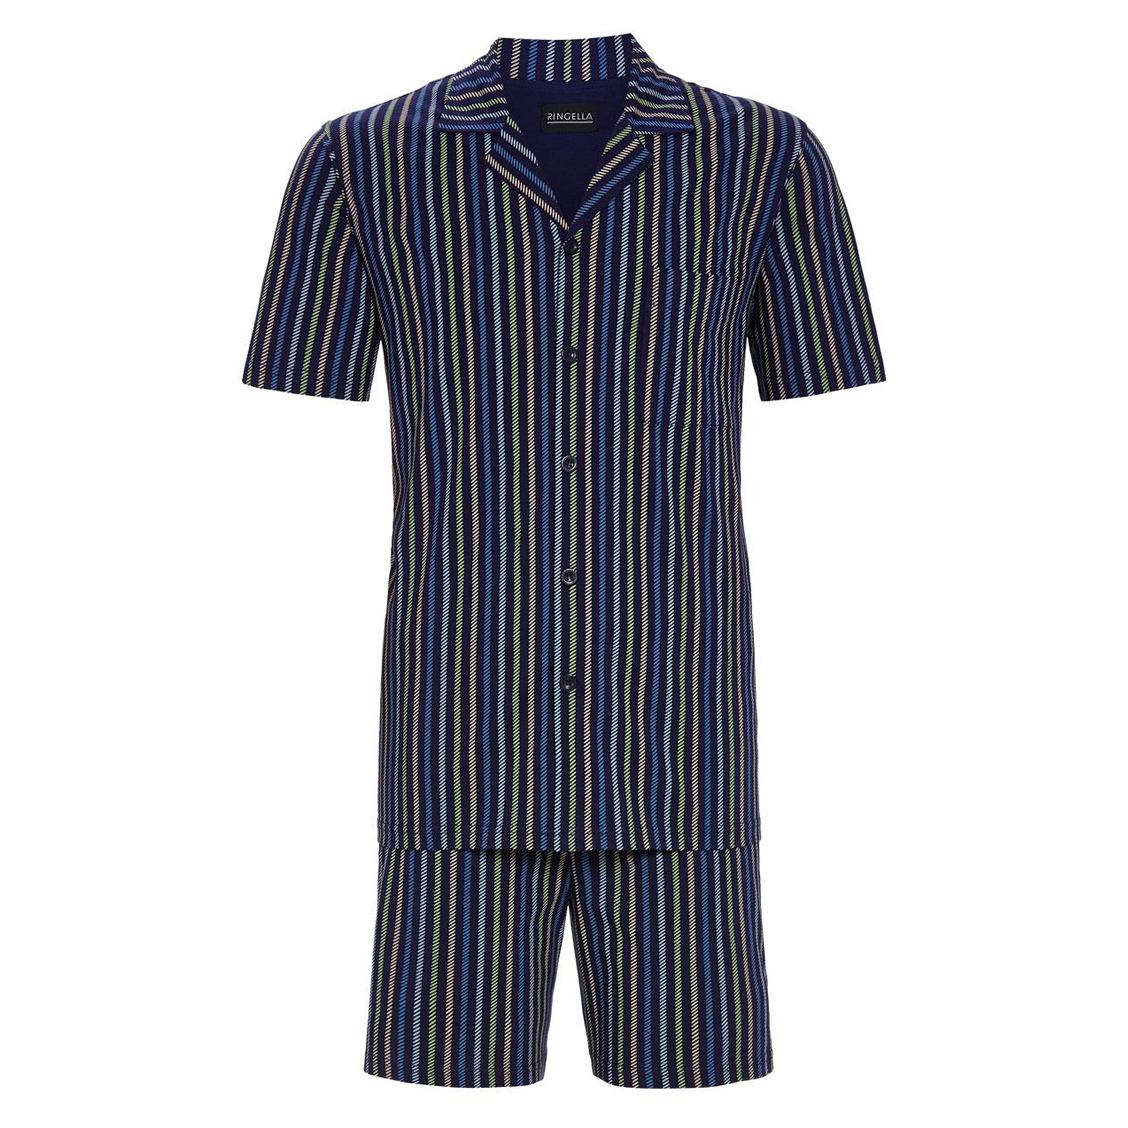 Pyjama court Ringella en coton : chemise et short bleu nuit à rayures vertes, beiges, bleu clair et 